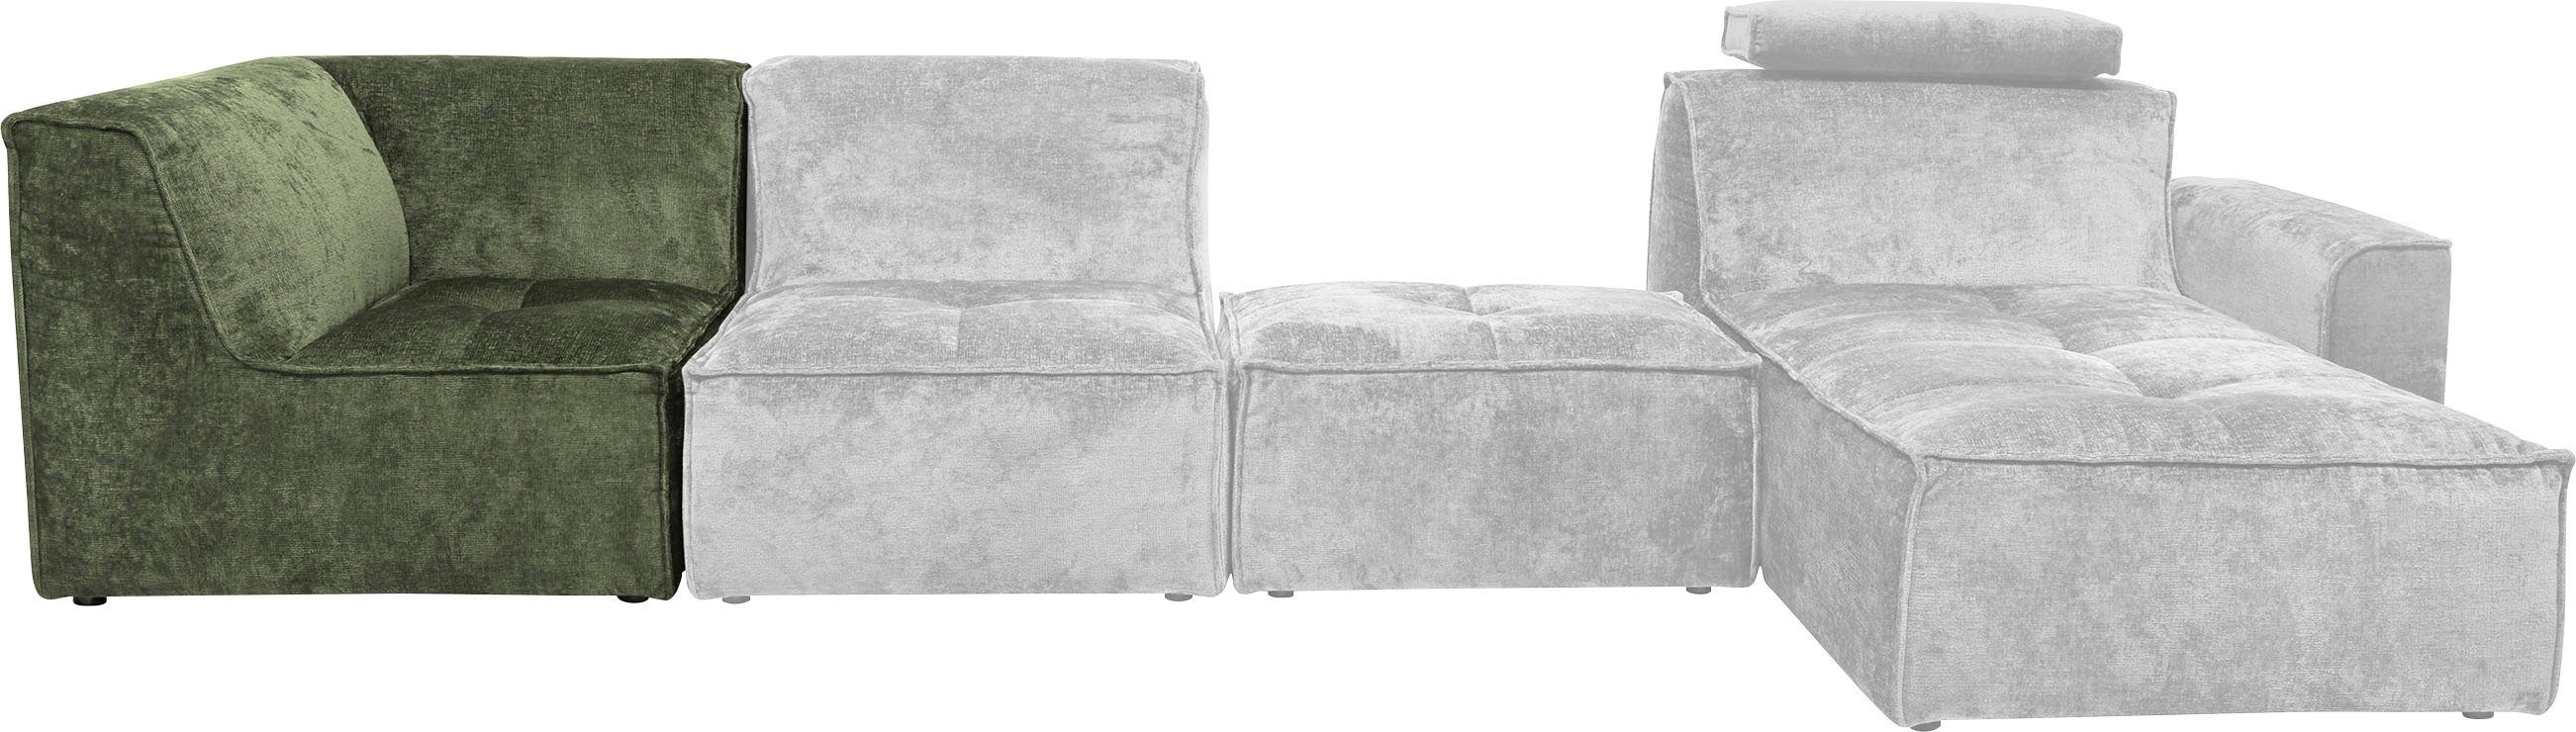 RAUM.ID Sofa-Eckelement Monolid Zusammenstellung oder für (1 Modul als separat St), olivgrün verwendbar, individuelle